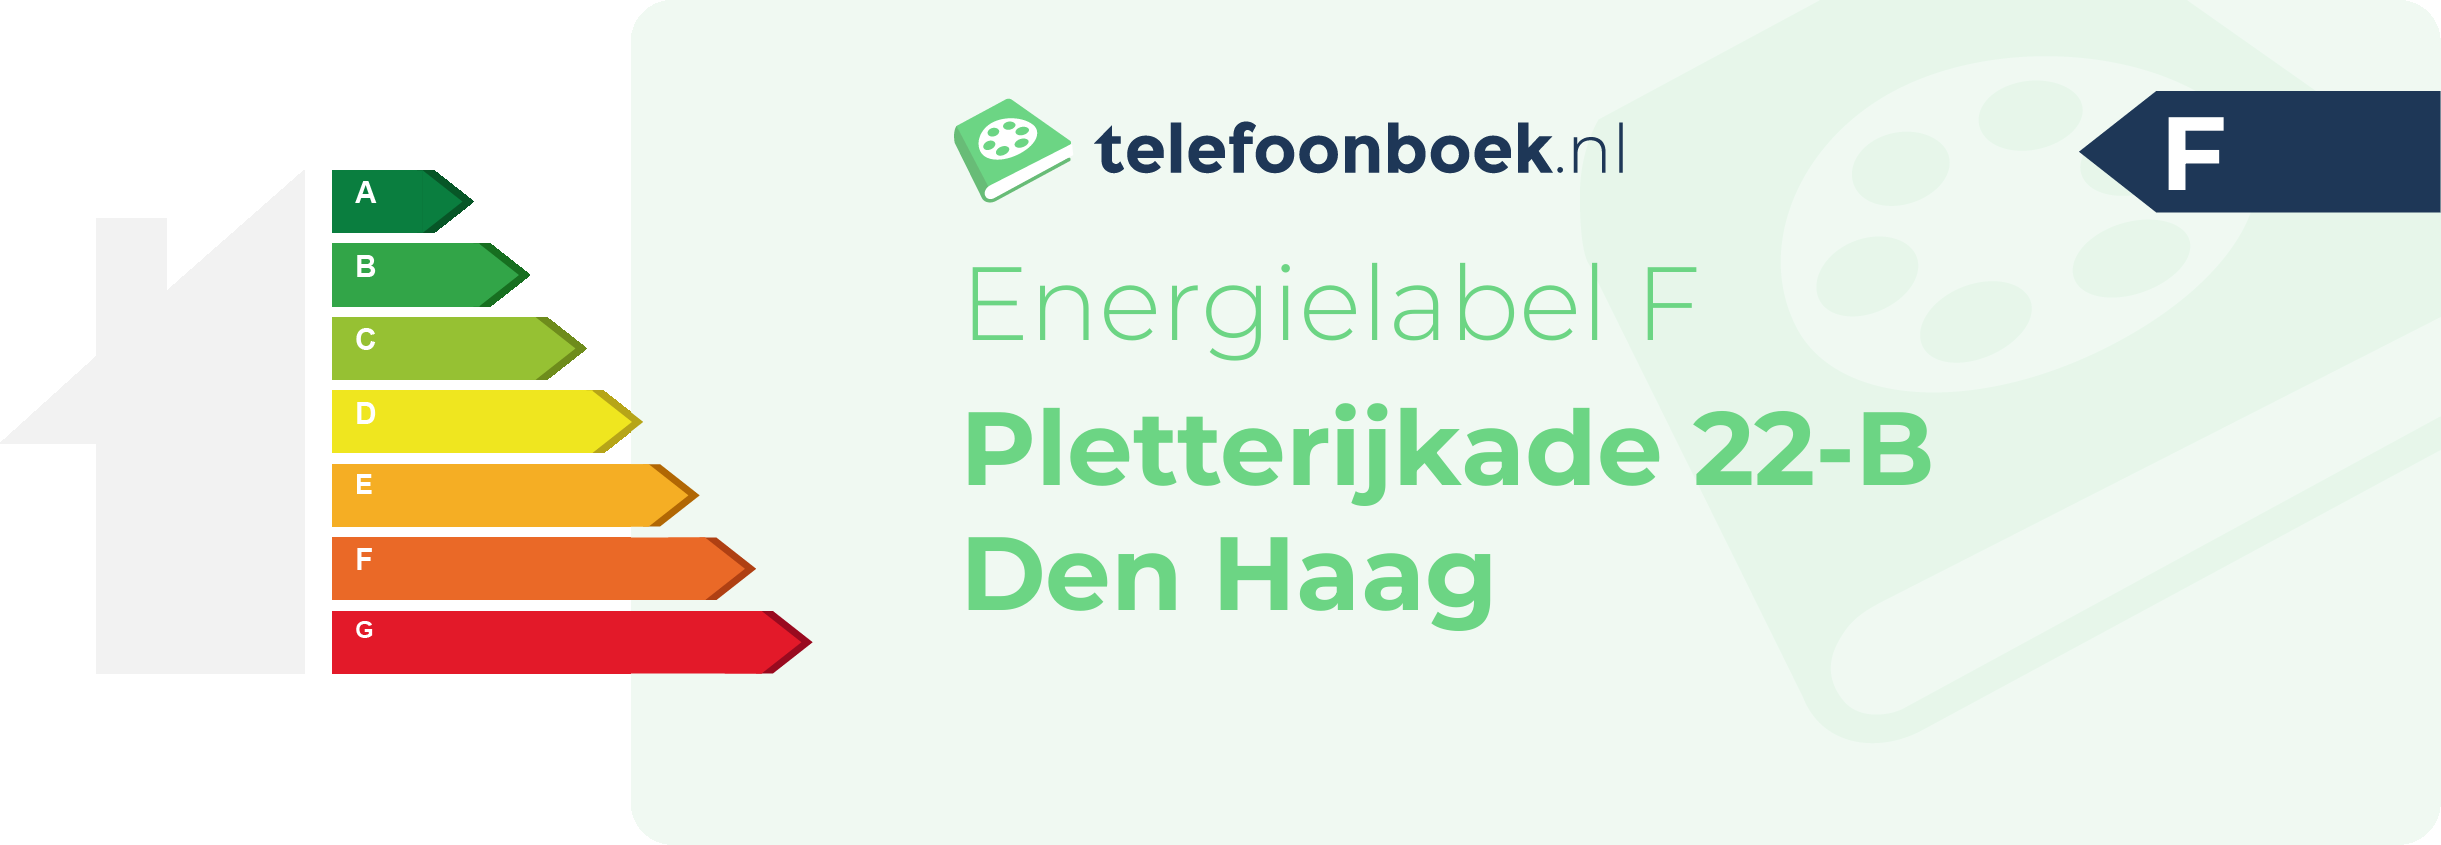 Energielabel Pletterijkade 22-B Den Haag